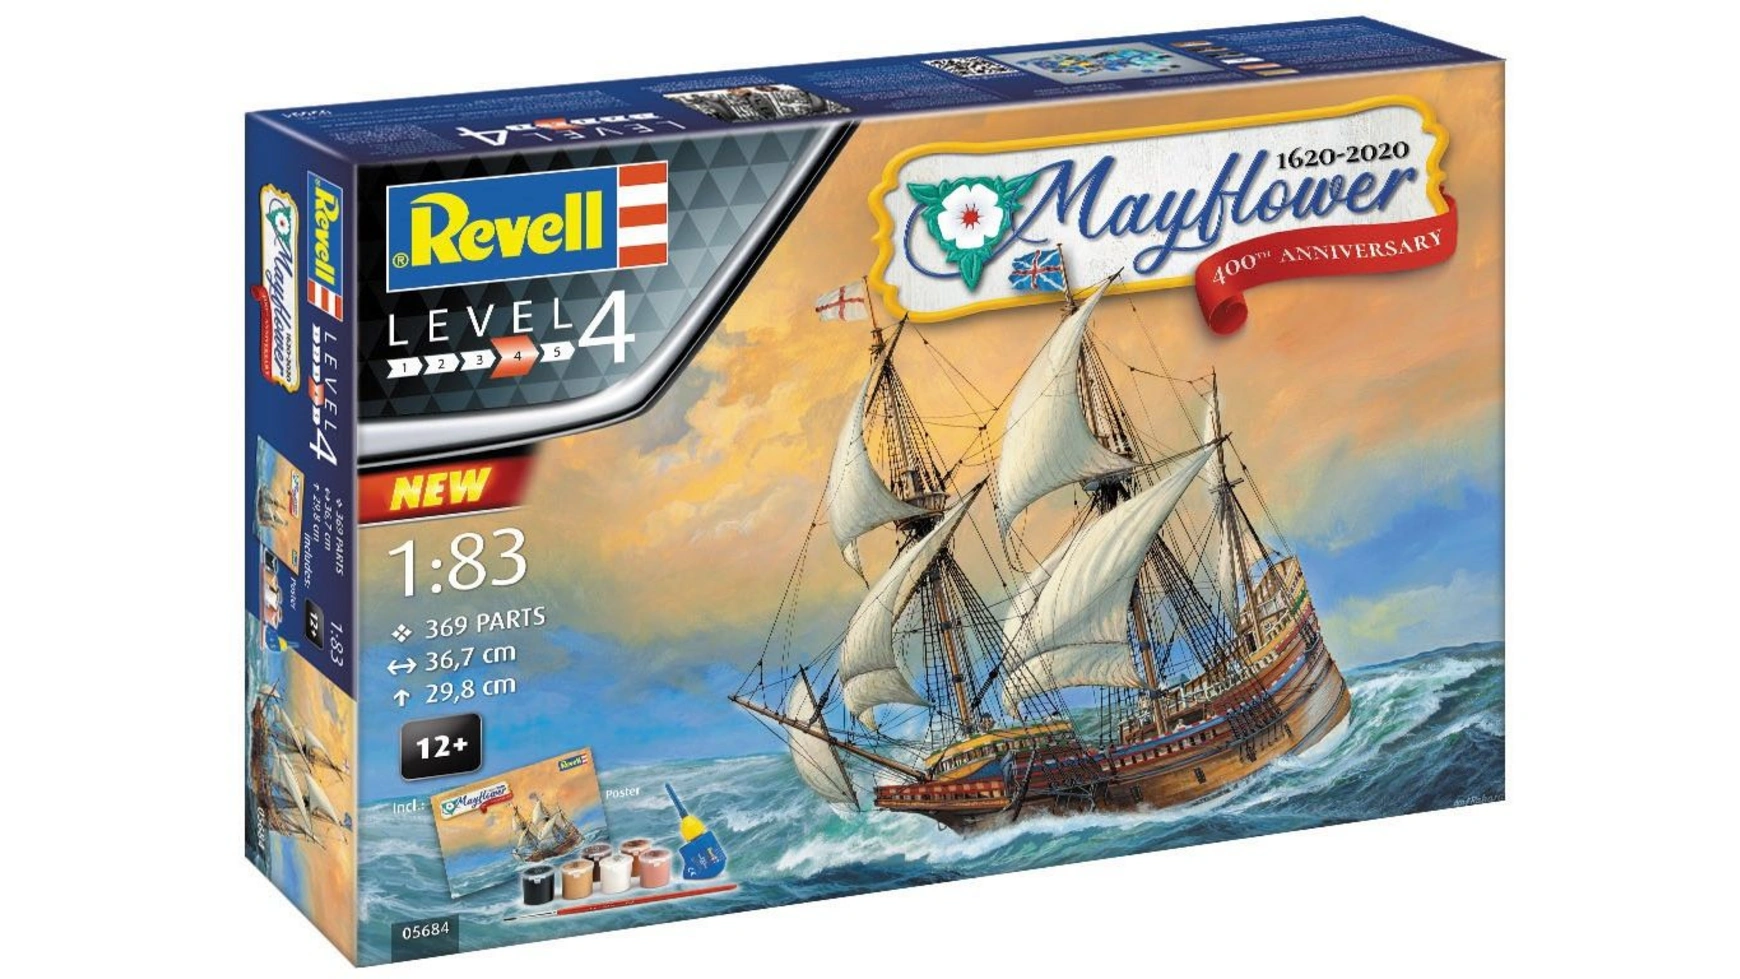 Revell Подарочный набор Mayflower 400-летие подарочный набор revell серии конфликт наций